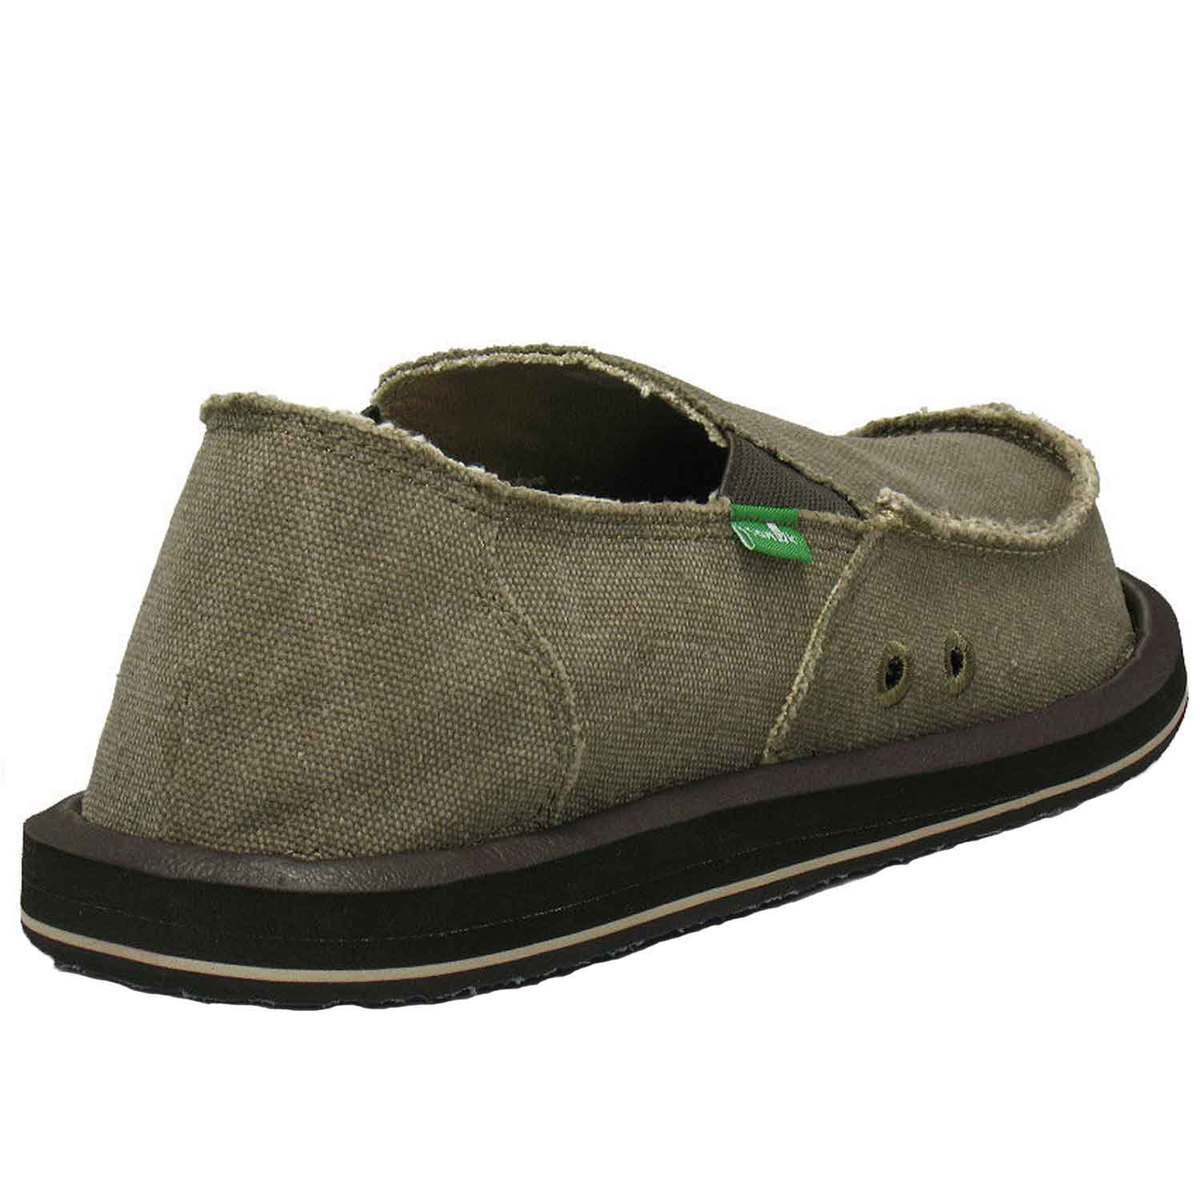 Sanuk Men's Vagabond Casual Shoes - Brown - Size 10 - Brown 10 ...